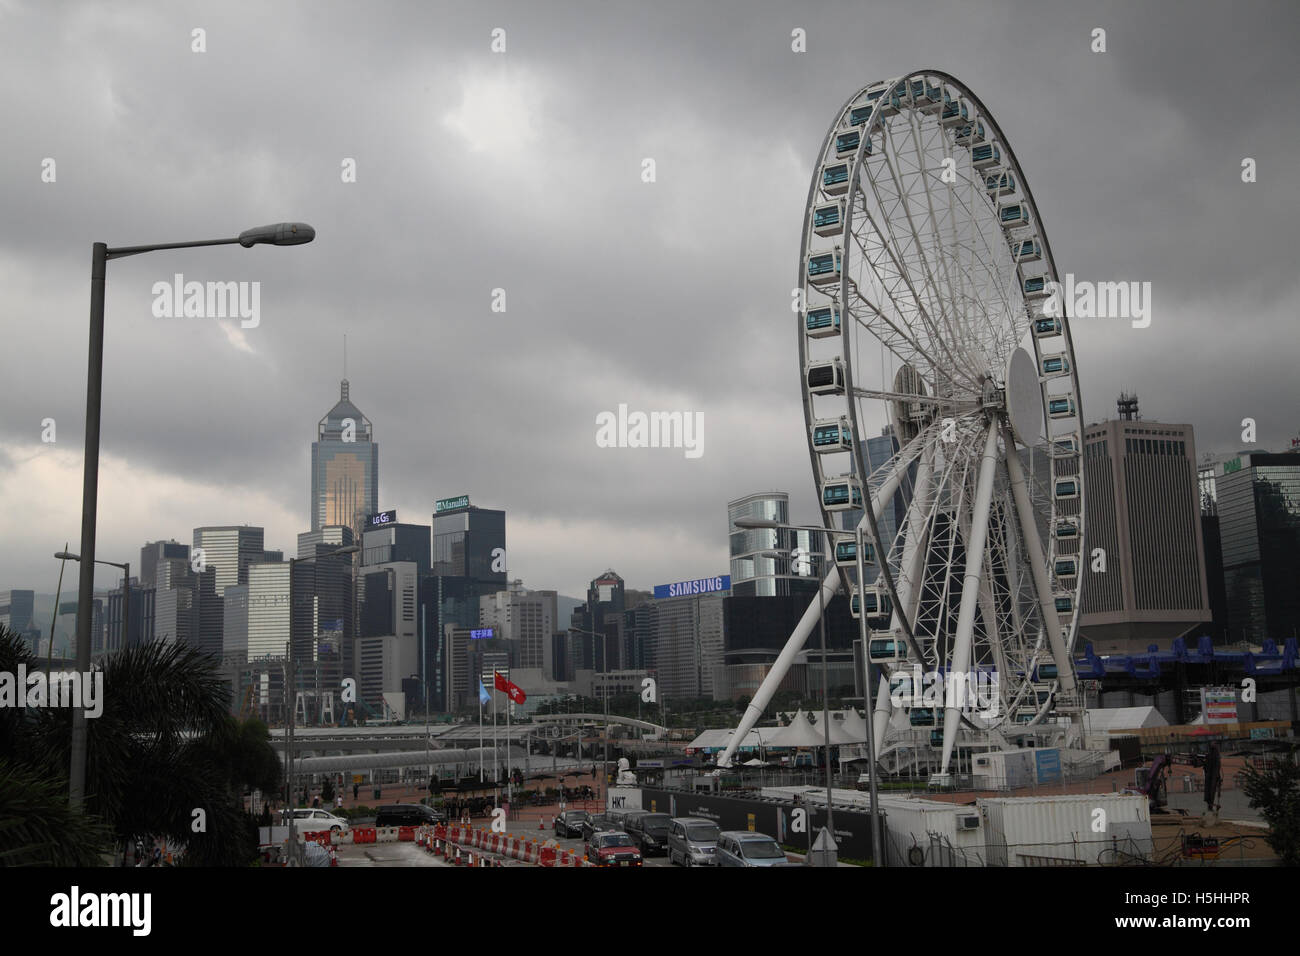 Una ancora senza nome ruota gigante e la skyline di Hong Kong di elevato aumento di edifici commerciali, con il Central Plaza sulla sinistra Foto Stock